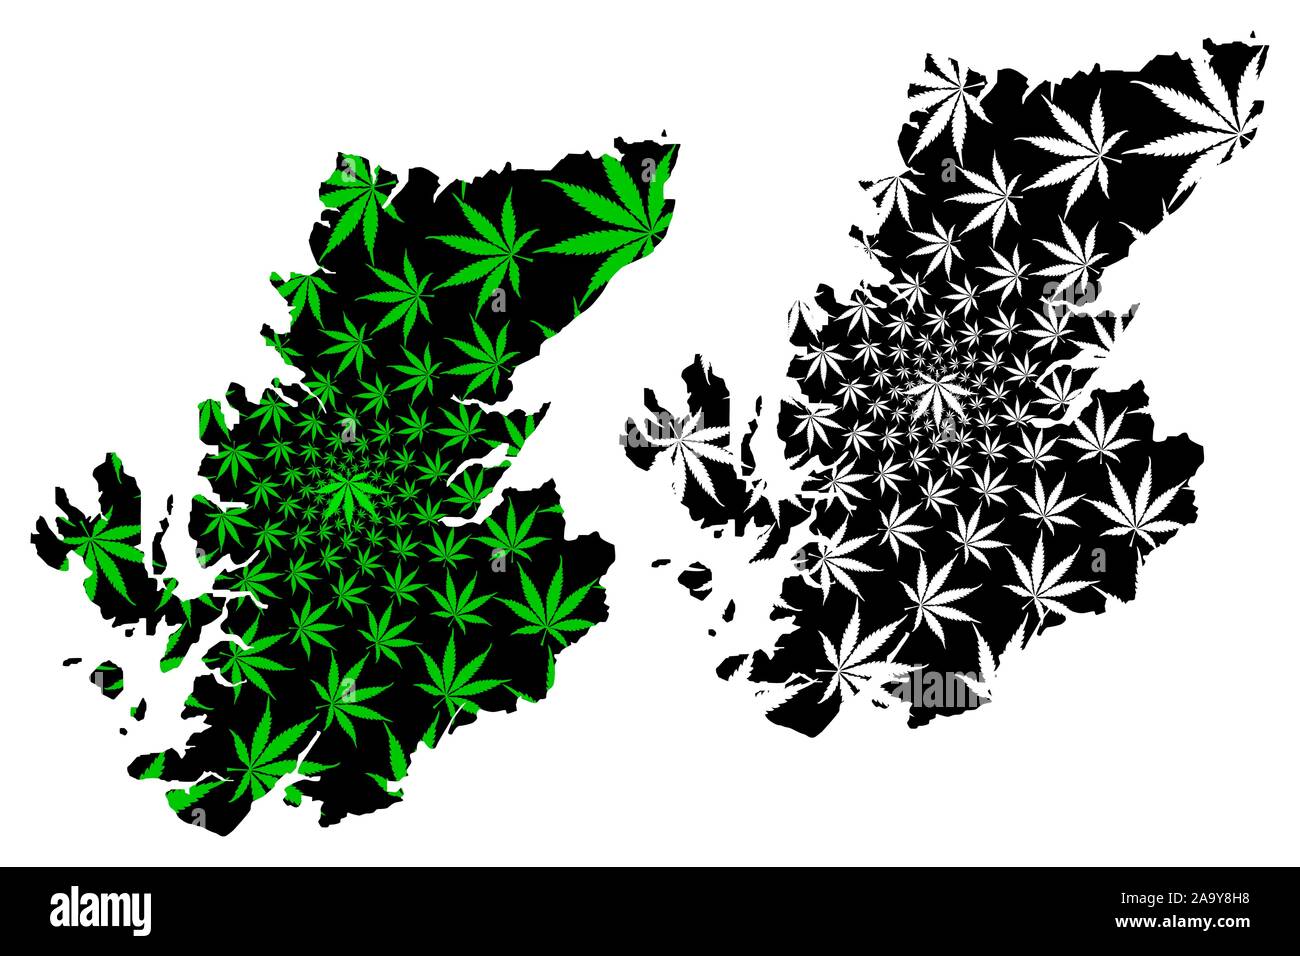 Highland (Royaume-Uni, l'administration locale en Ecosse) la carte est conçue de feuilles de cannabis vert et noir, les Highlands écossais, inner-Hebridean, conseil ar Illustration de Vecteur